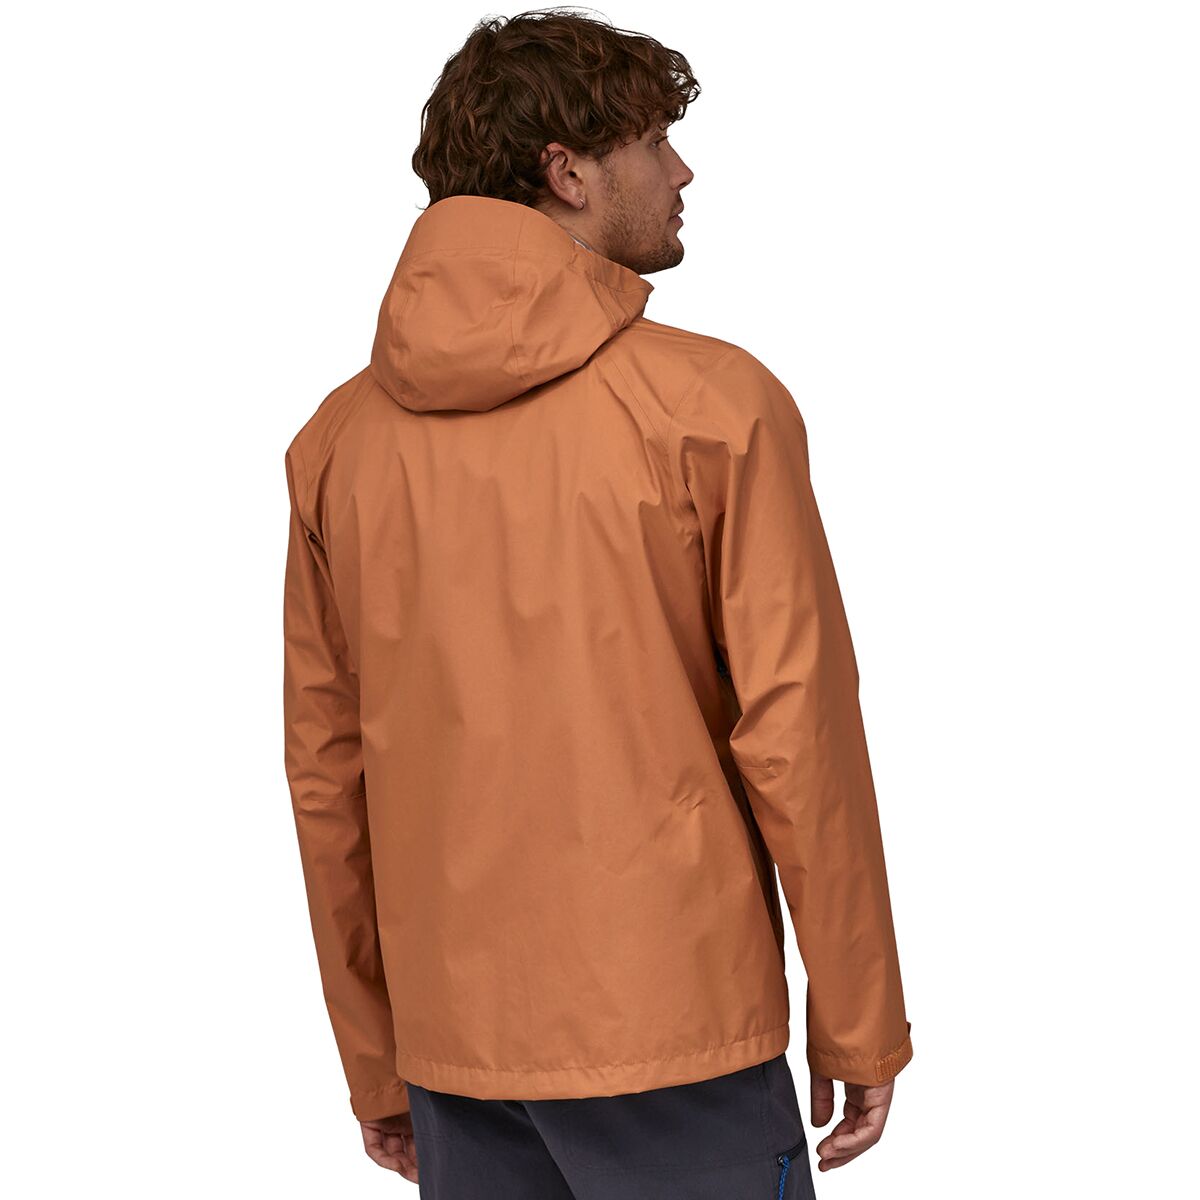 Patagonia Jacket - Men's Clothing